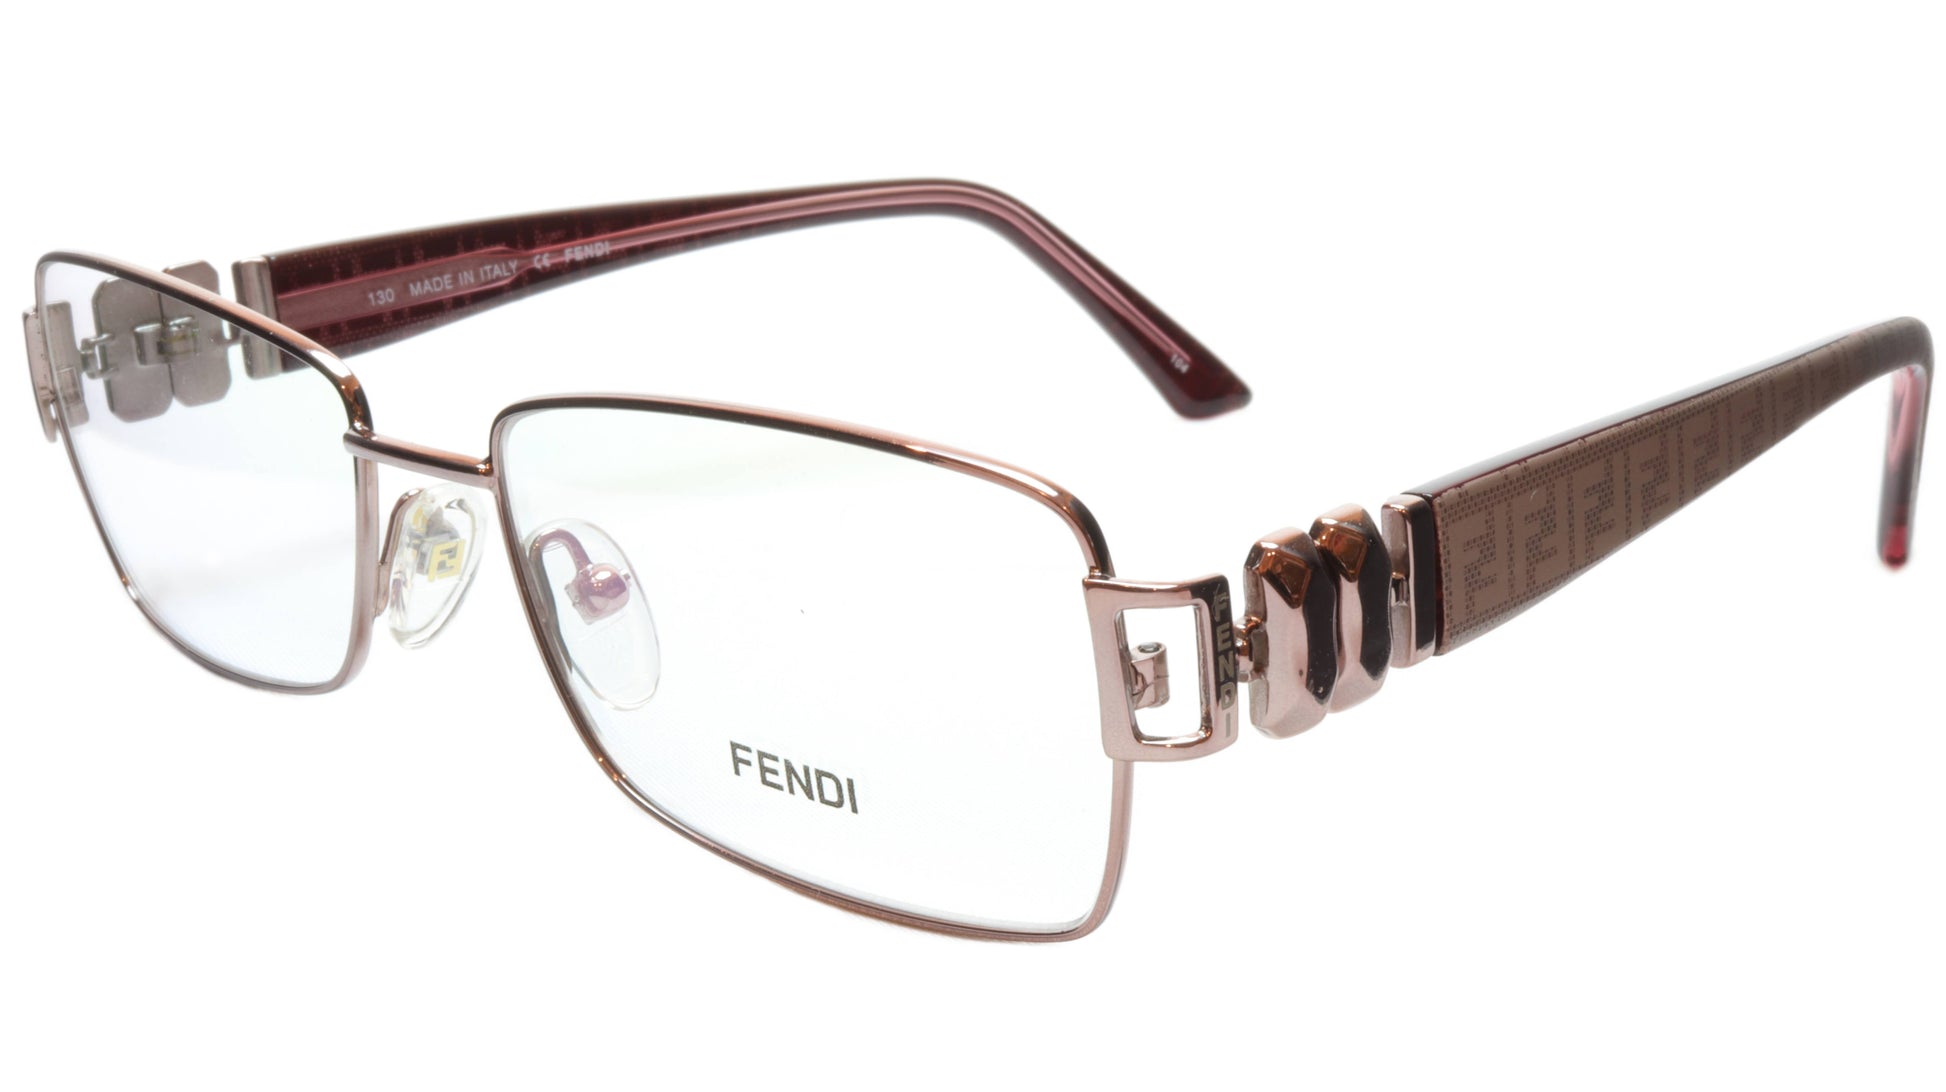 FENDI Eyeglasses Frame F883 (663) Metal Light Violet Italy Made 53-16-130, 33 - Frame Bay